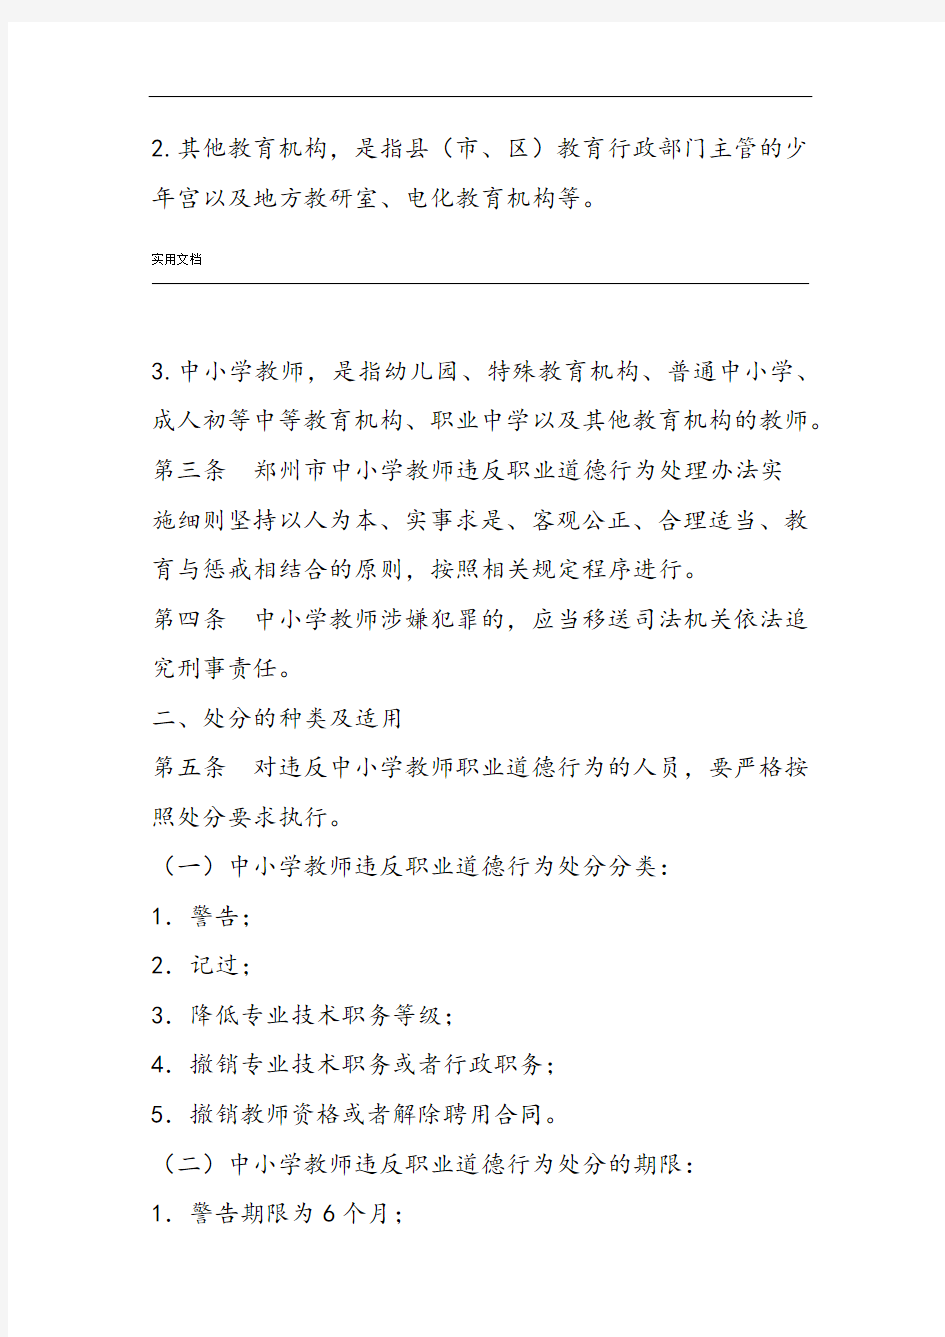 郑州市中小学教师违反职业道德行为处理实施研究细则